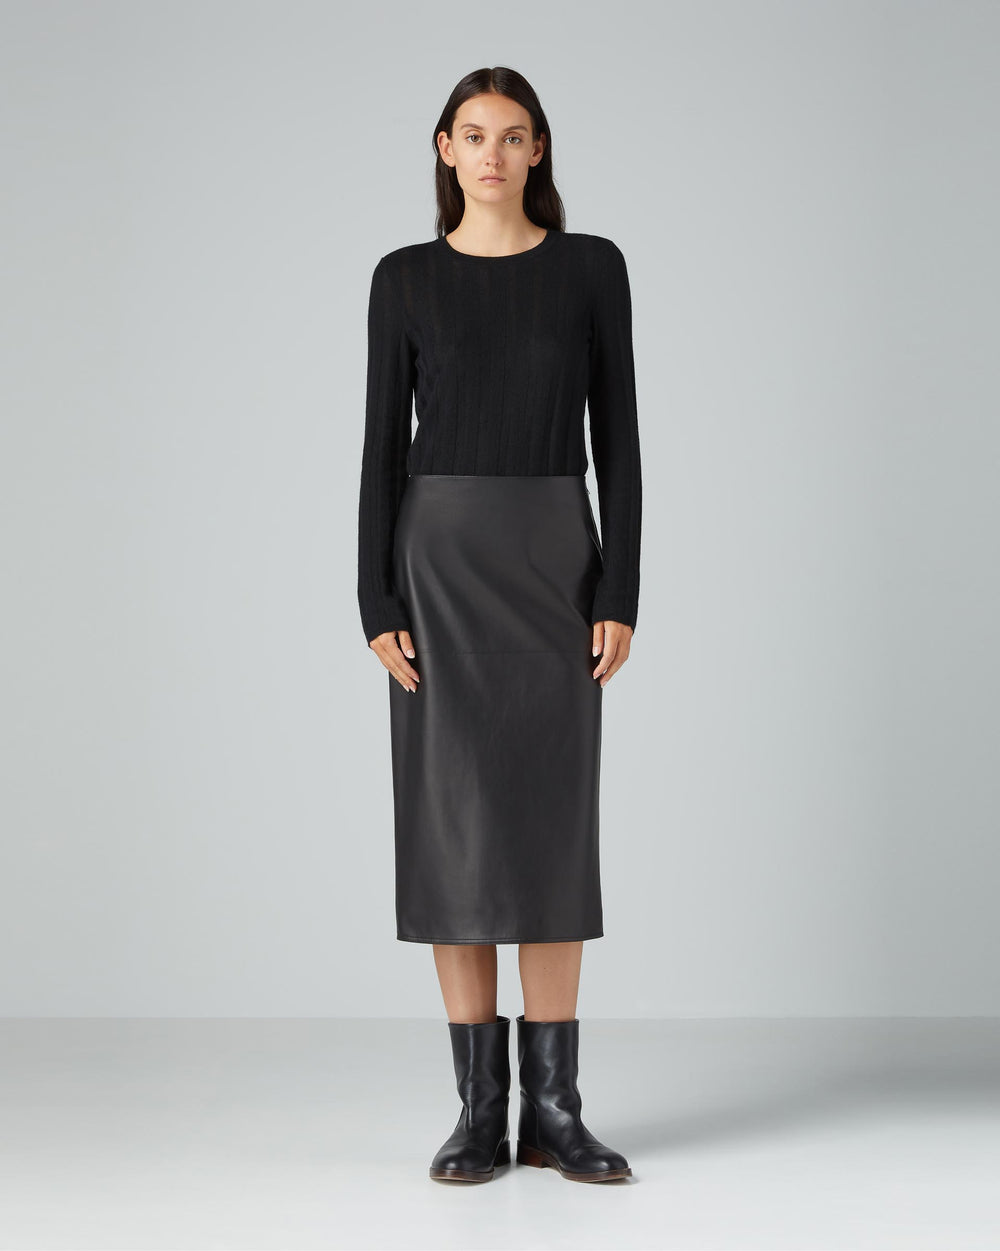 Nova Skirt in Nappa Leather, Black